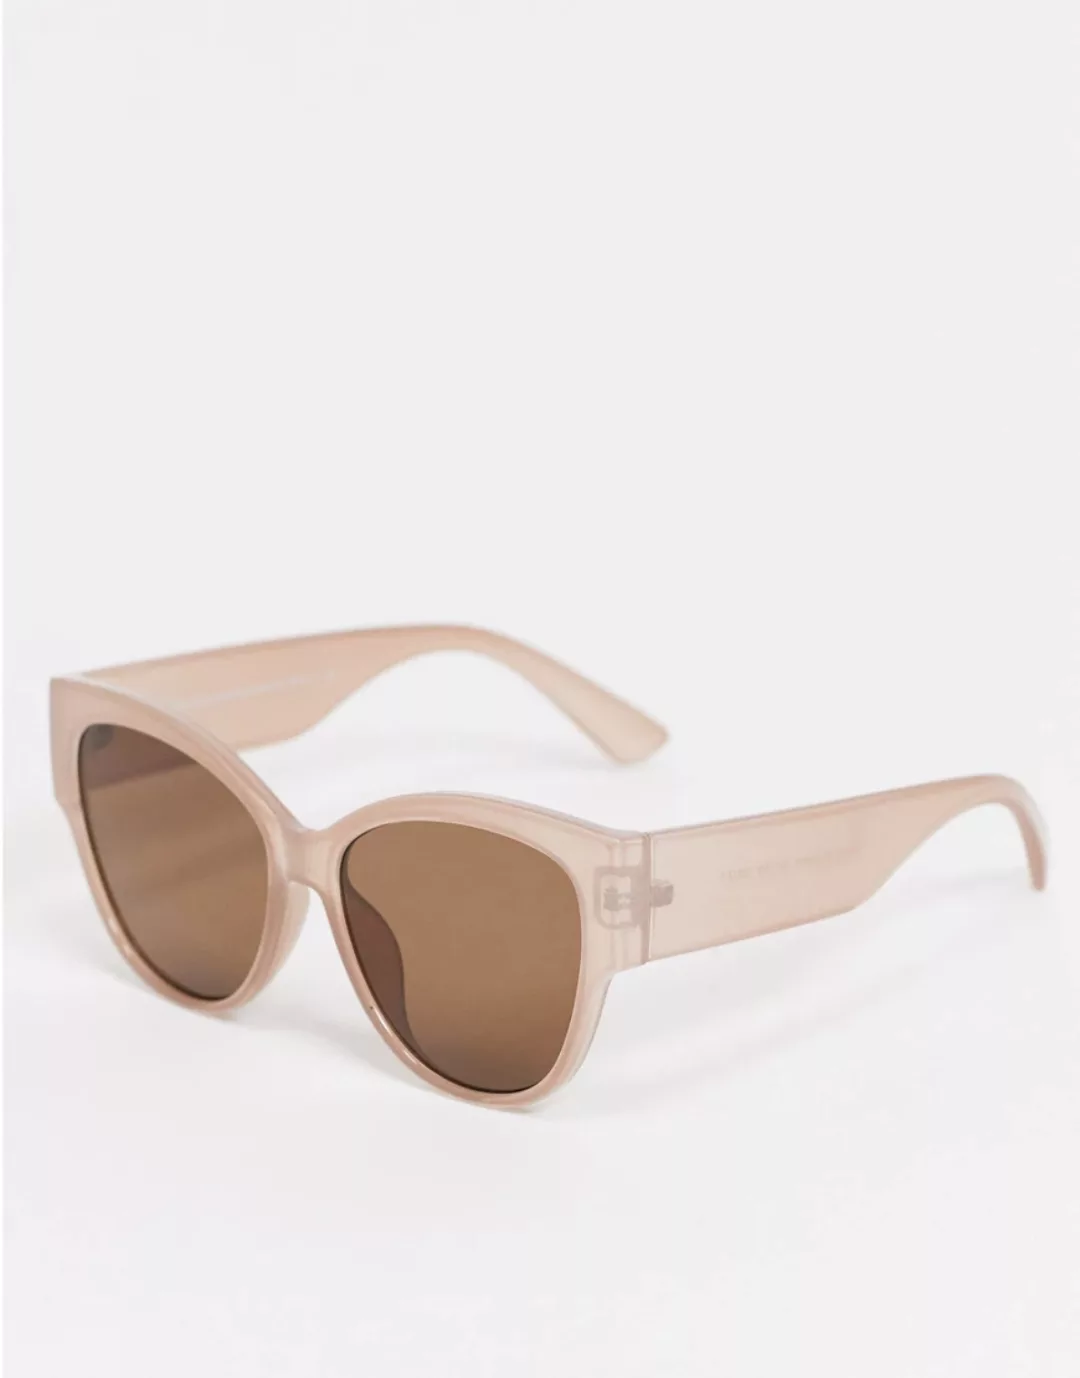 New Look – Rechteckige Cateye-Sonnenbrille in Nerzrosa-Braun günstig online kaufen